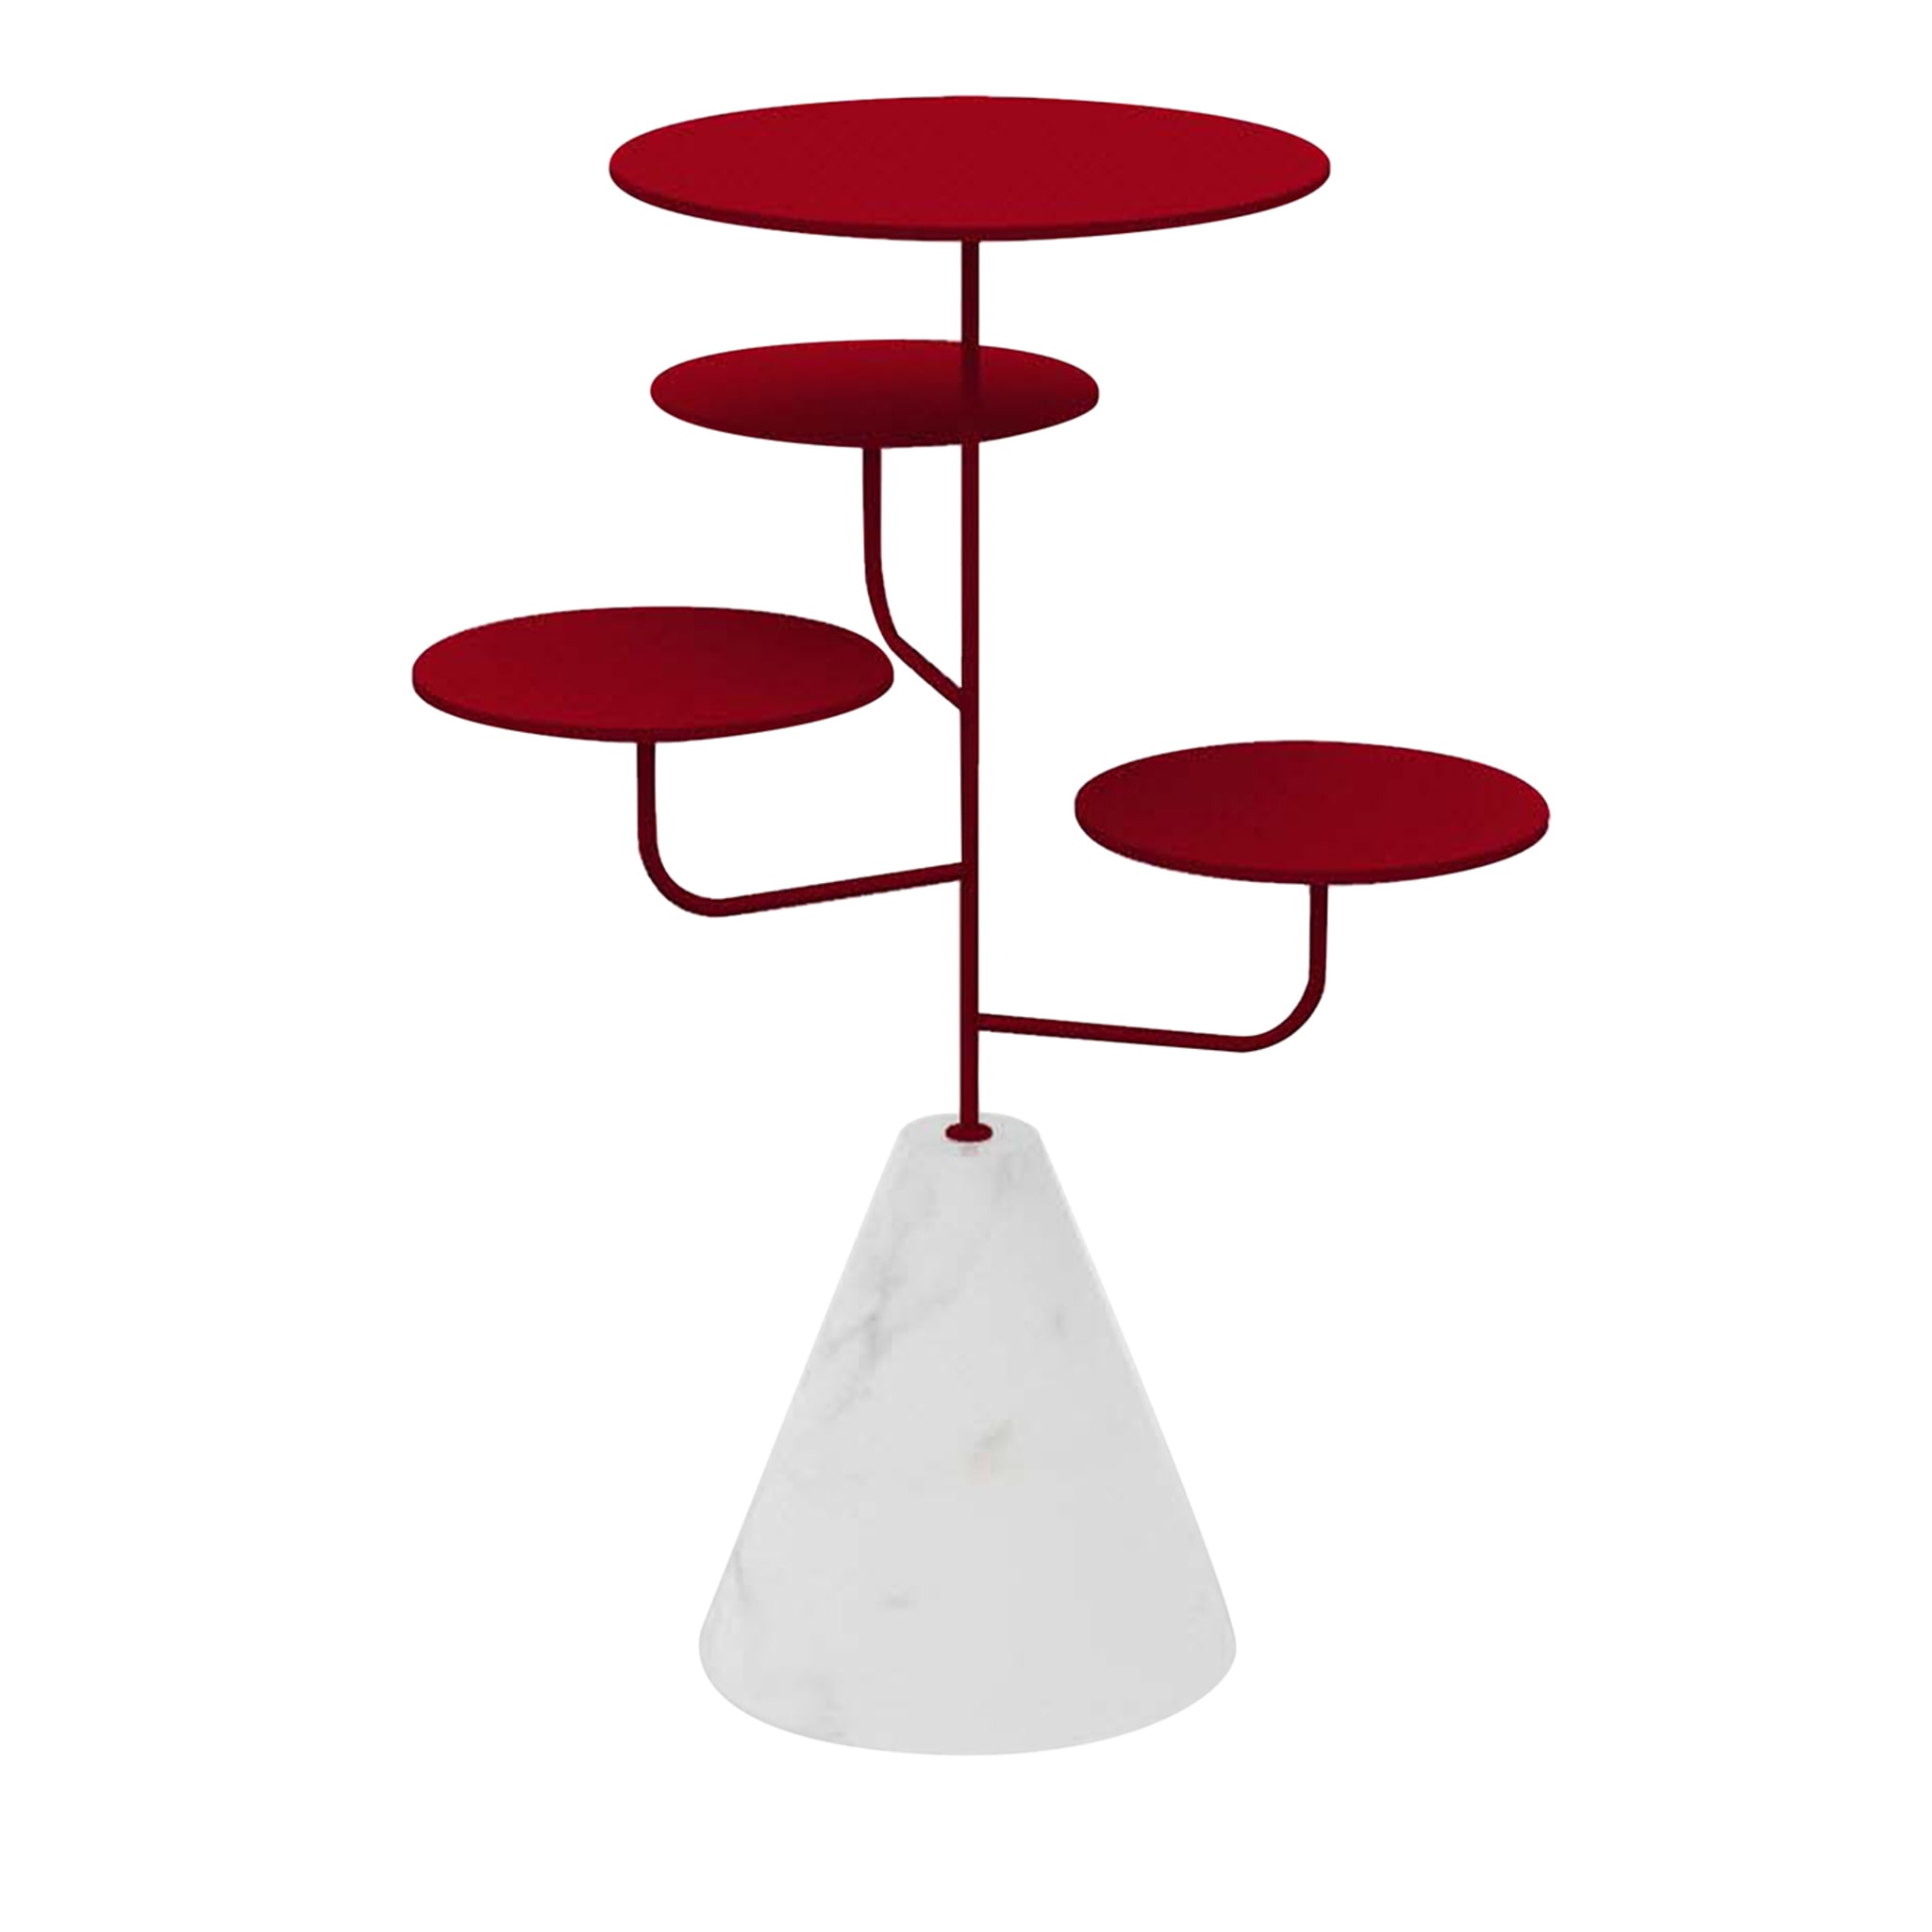 Condiviso - Piantana a 4 piani in rosso rubino/bianco di Carrara - Vista principale